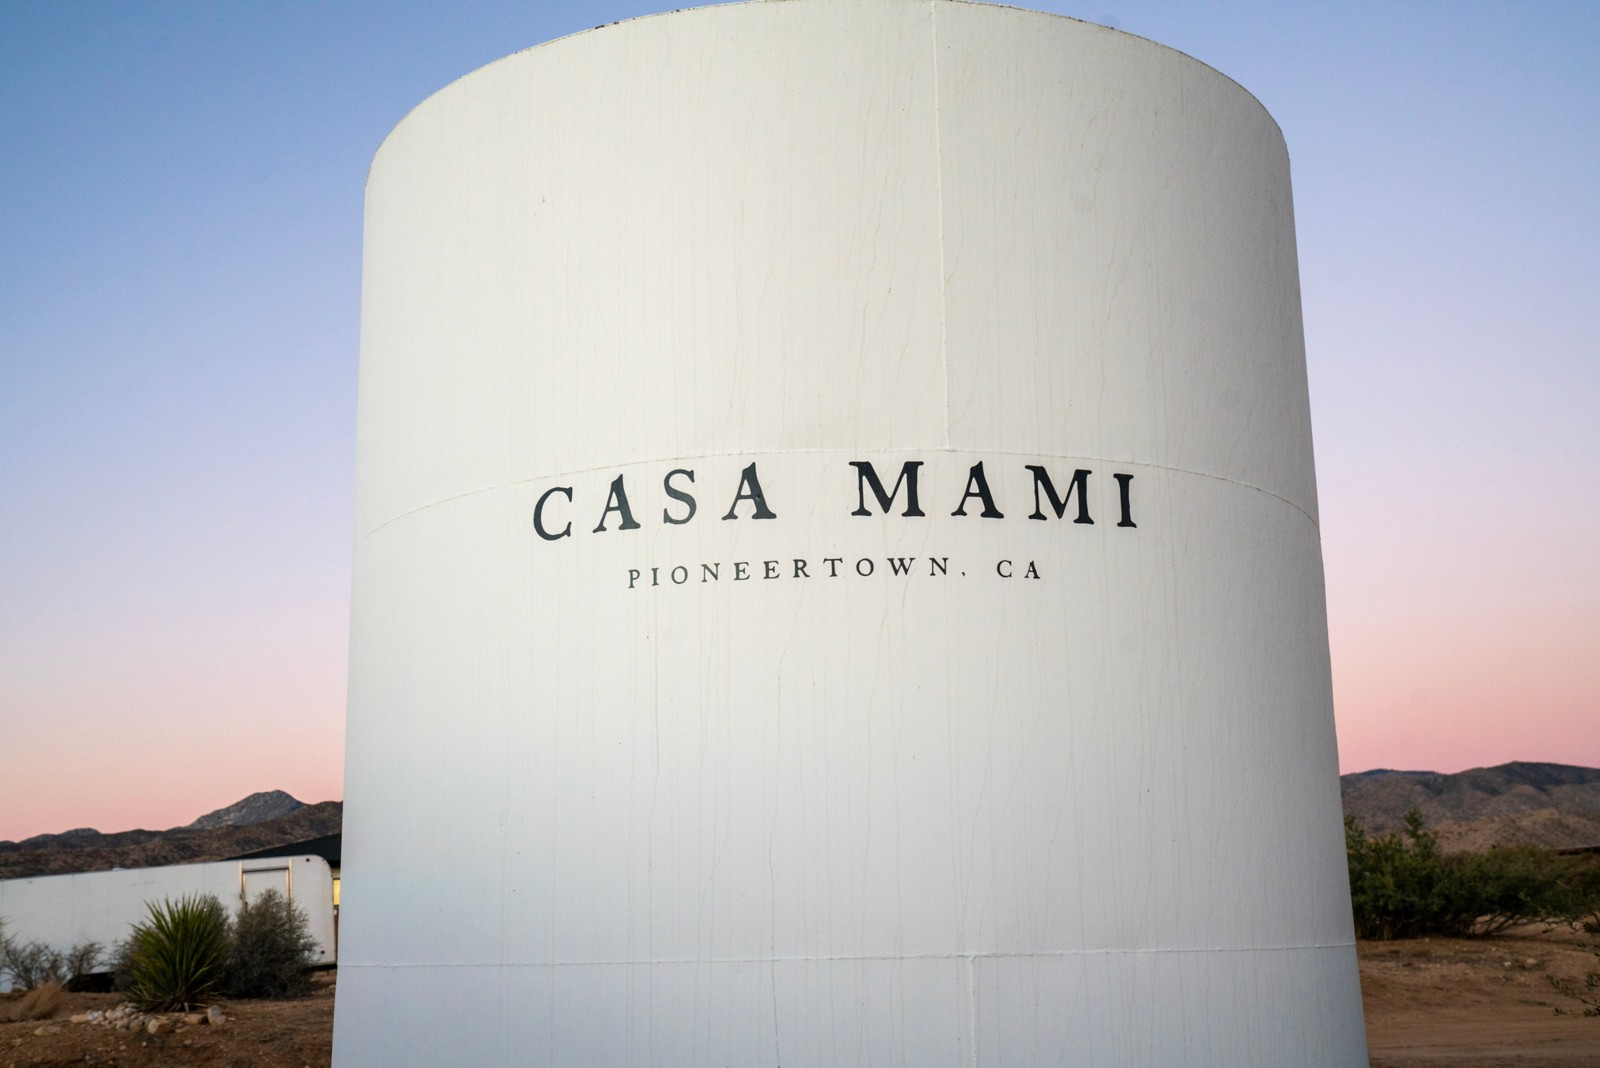 Un gran tanque de agua con el nombre del negocio de Carlos Naude, Casa Mami, escrito en él.